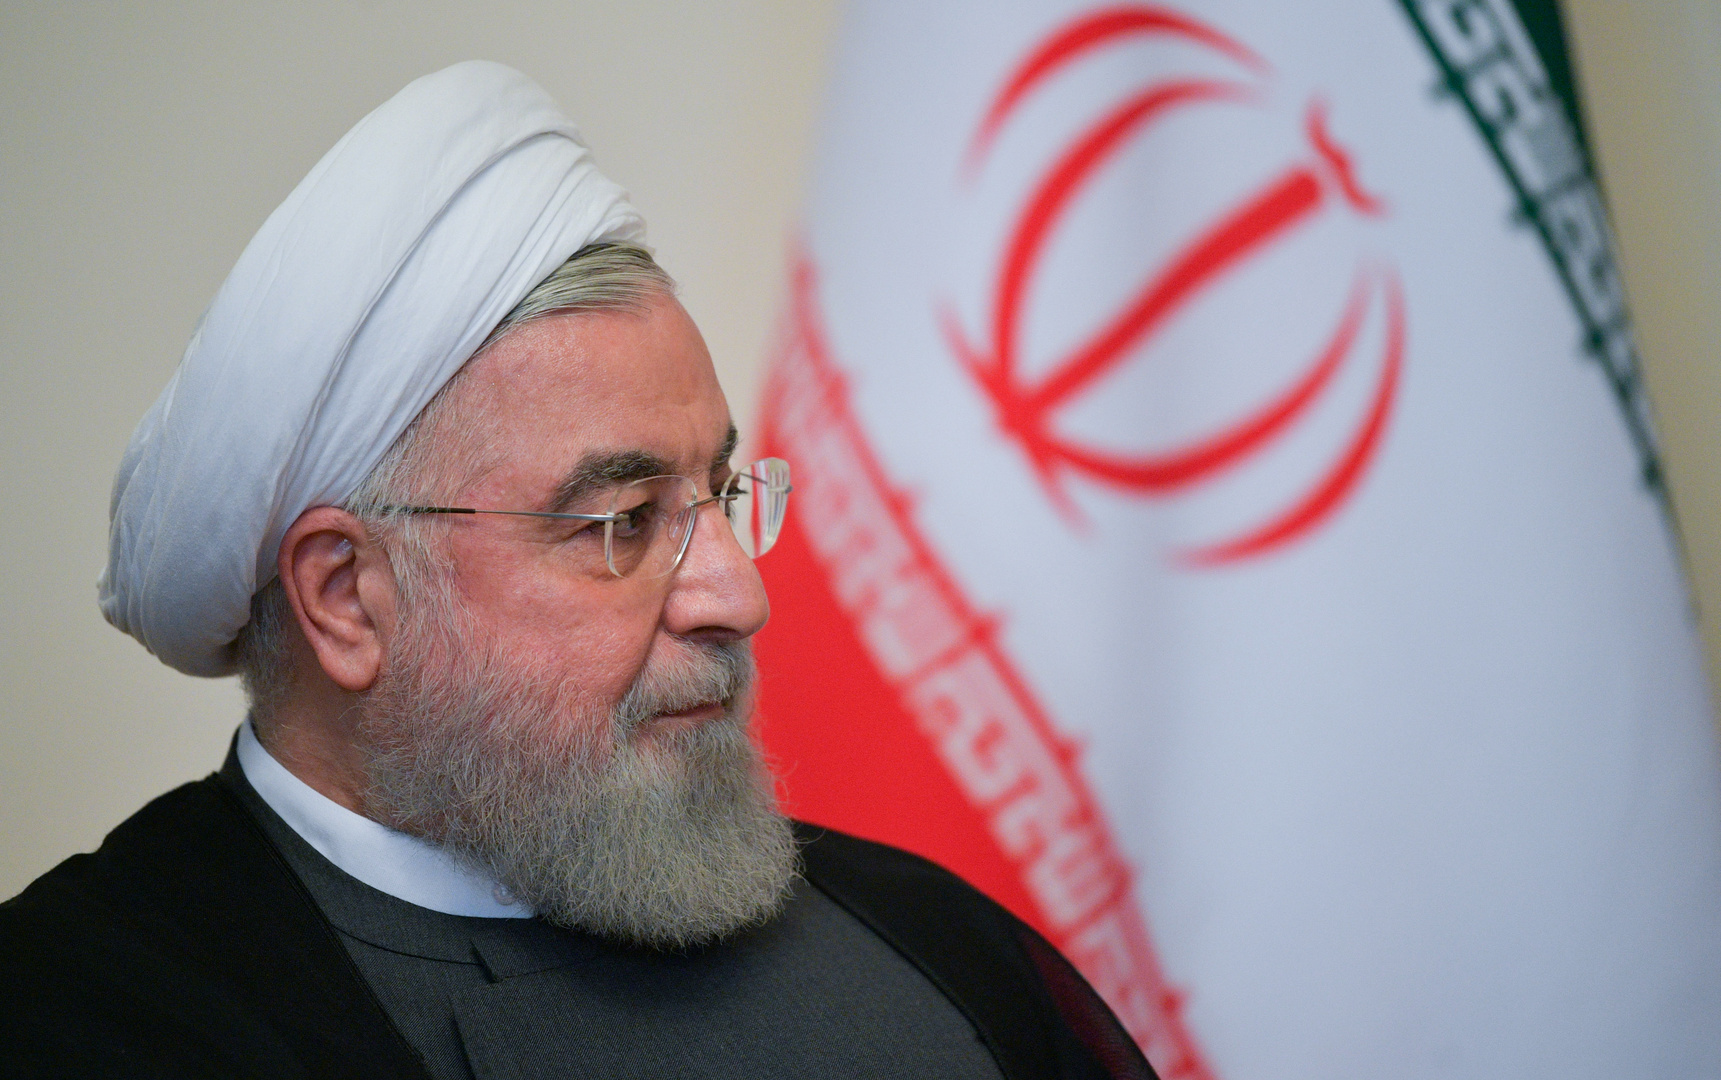 إيران تعد بأن لا تتجاوز نسبة تخصيبها لليورانيوم 3.67% حال عودة واشنطن إلى الاتفاق النووي